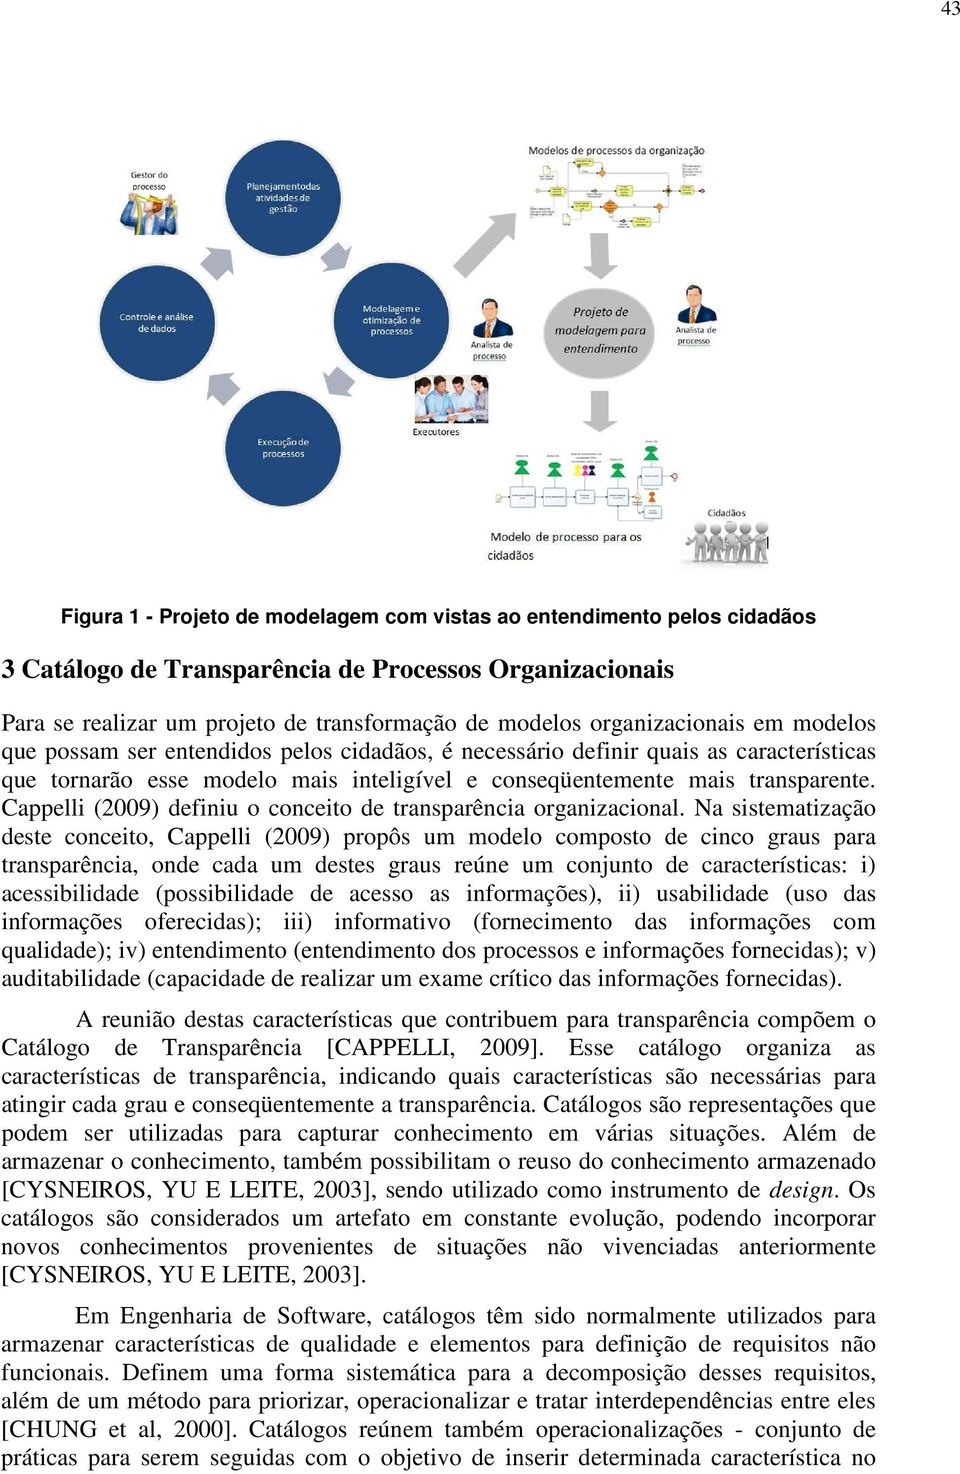 Cappelli (2009) definiu o conceito de transparência organizacional.